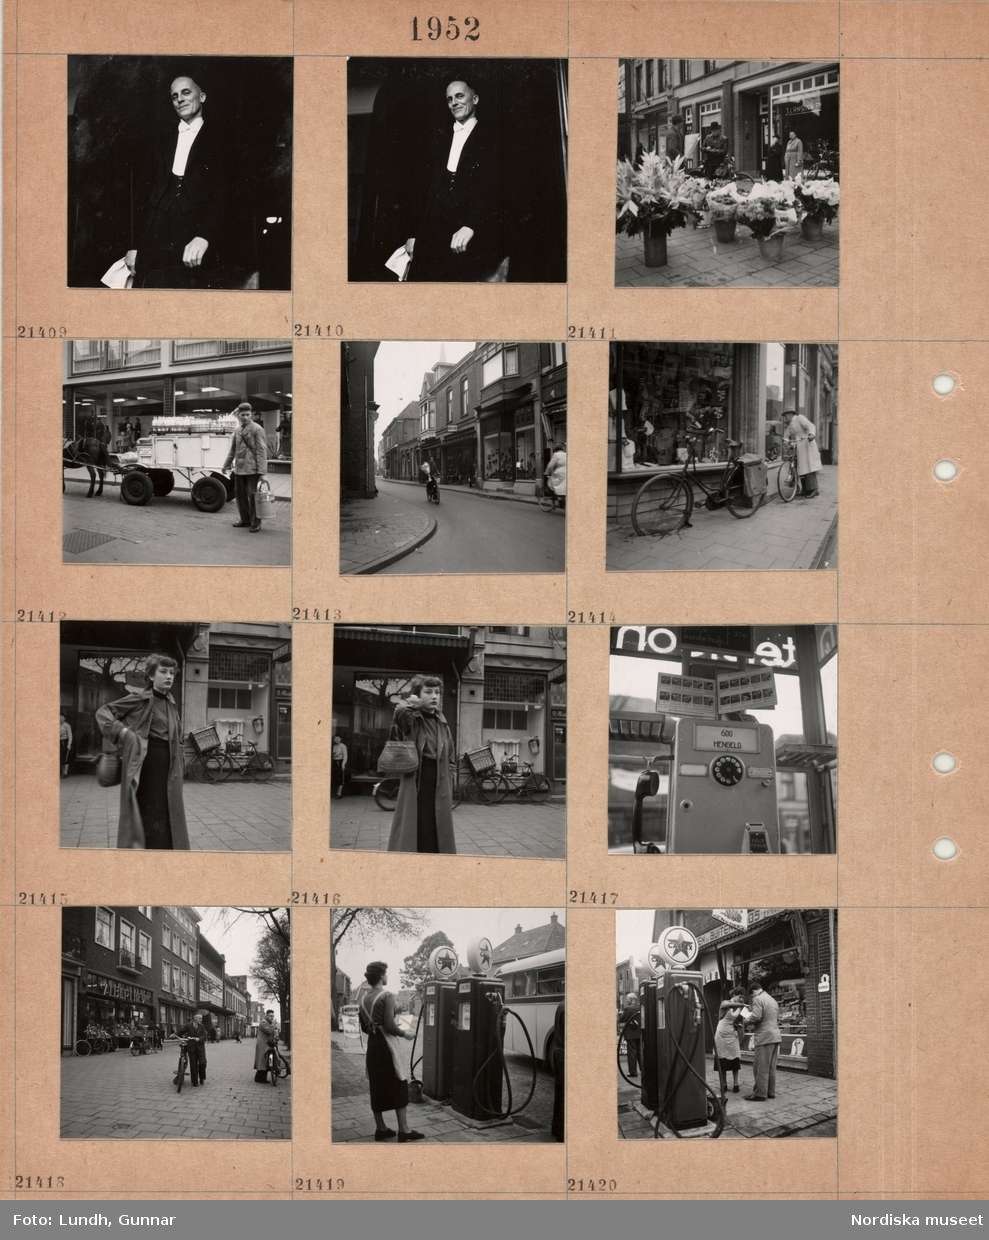 Motiv: (ingen anteckning) ;
"Holland 21400 - 444.", porträtt av en man som håller en serviett möjligen en servitör, hinkar med blommor till försäljning står på ett torg, en kvinna med en handväska, en telefonautomat med text "600 Hengelo", stadsvy med fotgängare med cyklar, en kvinna står vid bensinpumpar med text "Caltex".